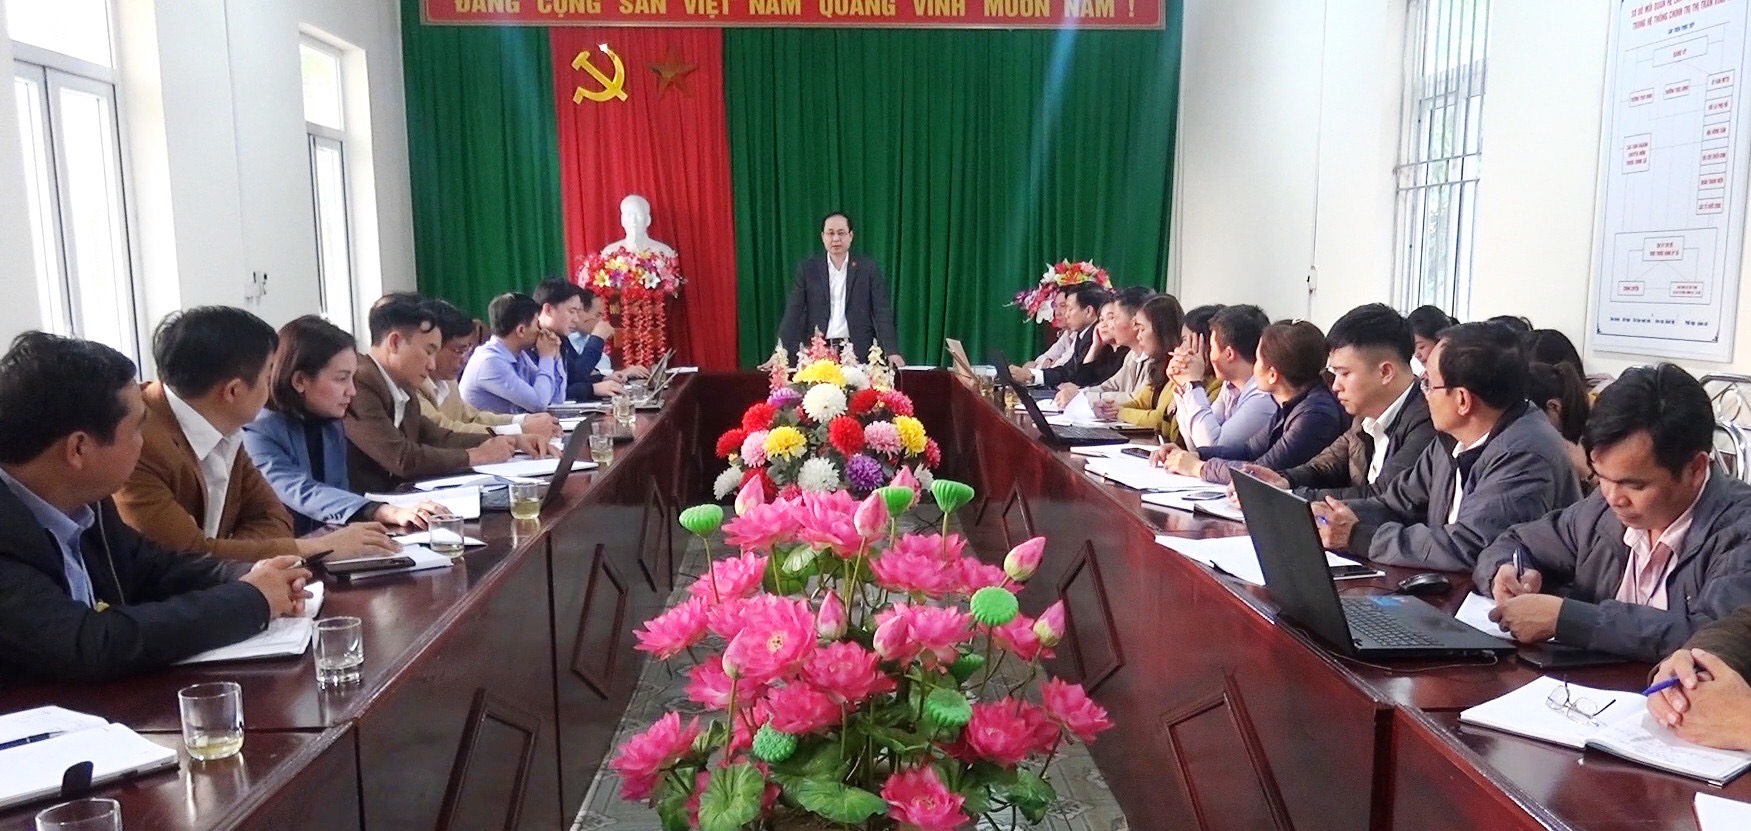 Đồng chí Hà Việt Hưng - Uỷ viên BCH Đảng bộ tỉnh, Bí thư Huyện uỷ bắc Quang làm việc với Đảng uỷ thị trấn Vĩnh Tuy